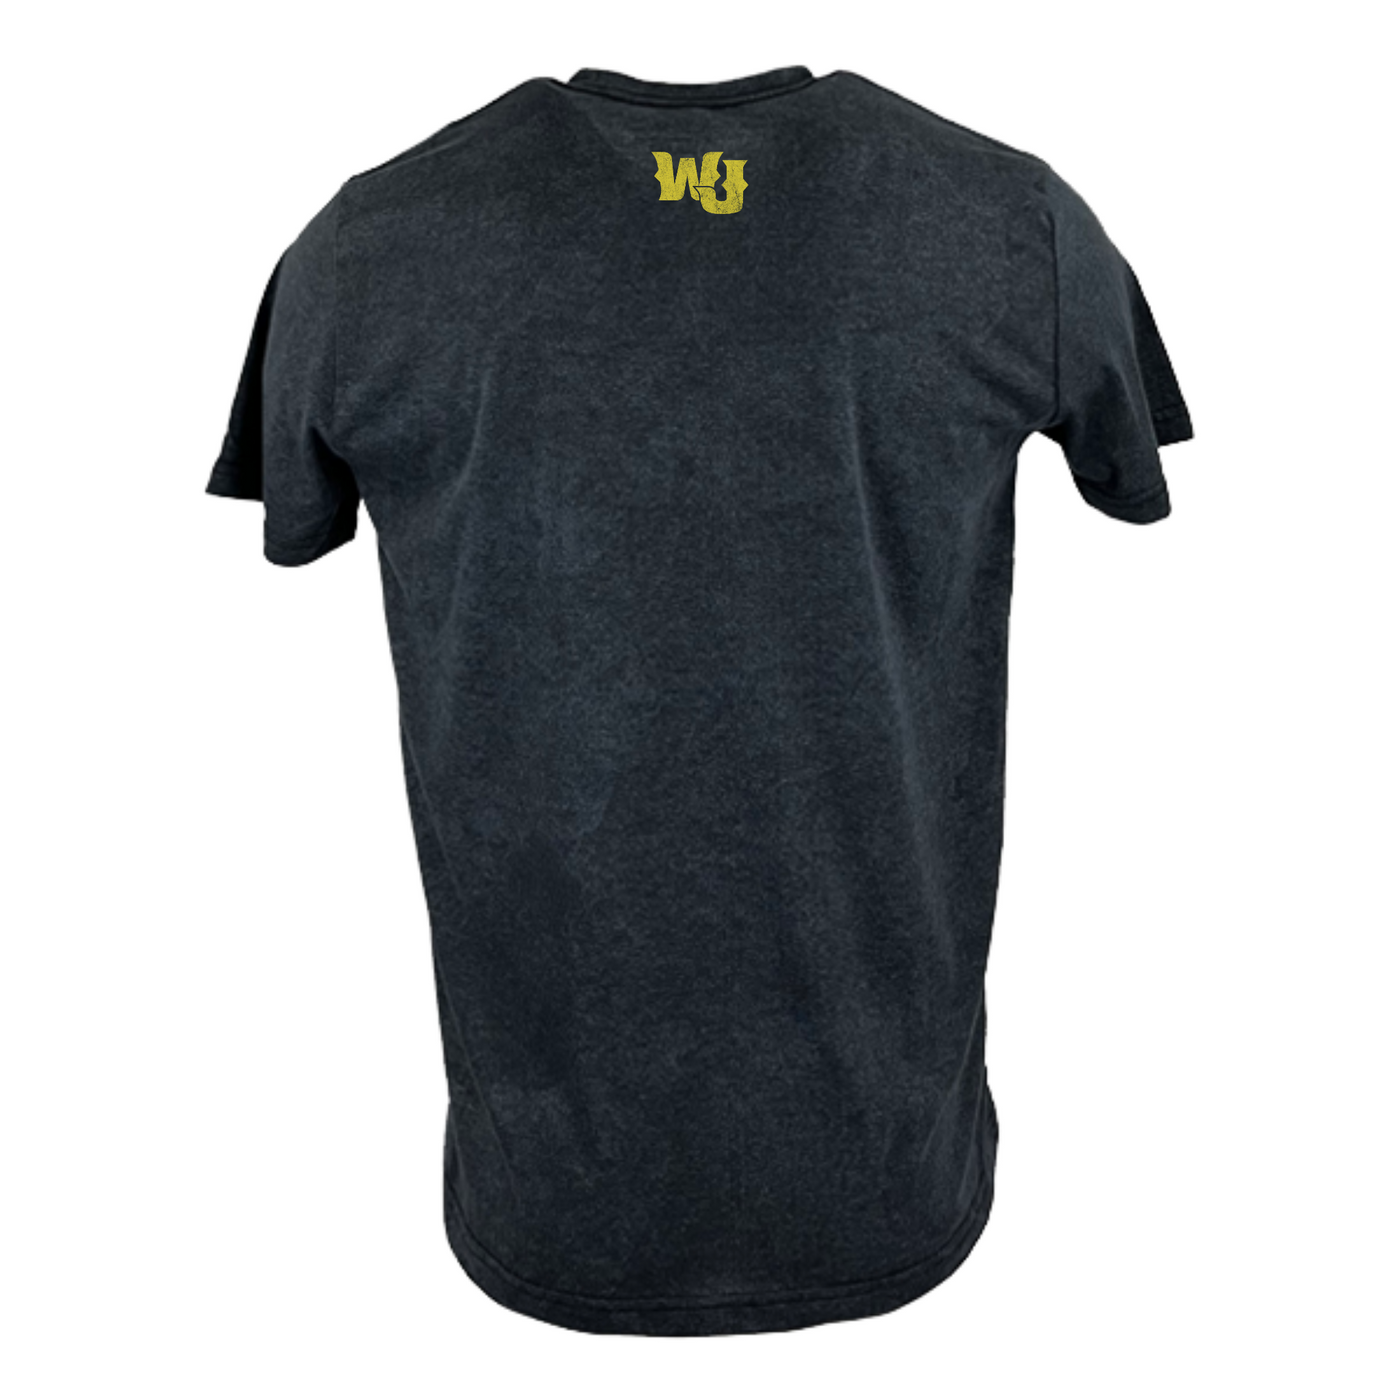 Will Jones - Logo T-Shirt: Vintage Black